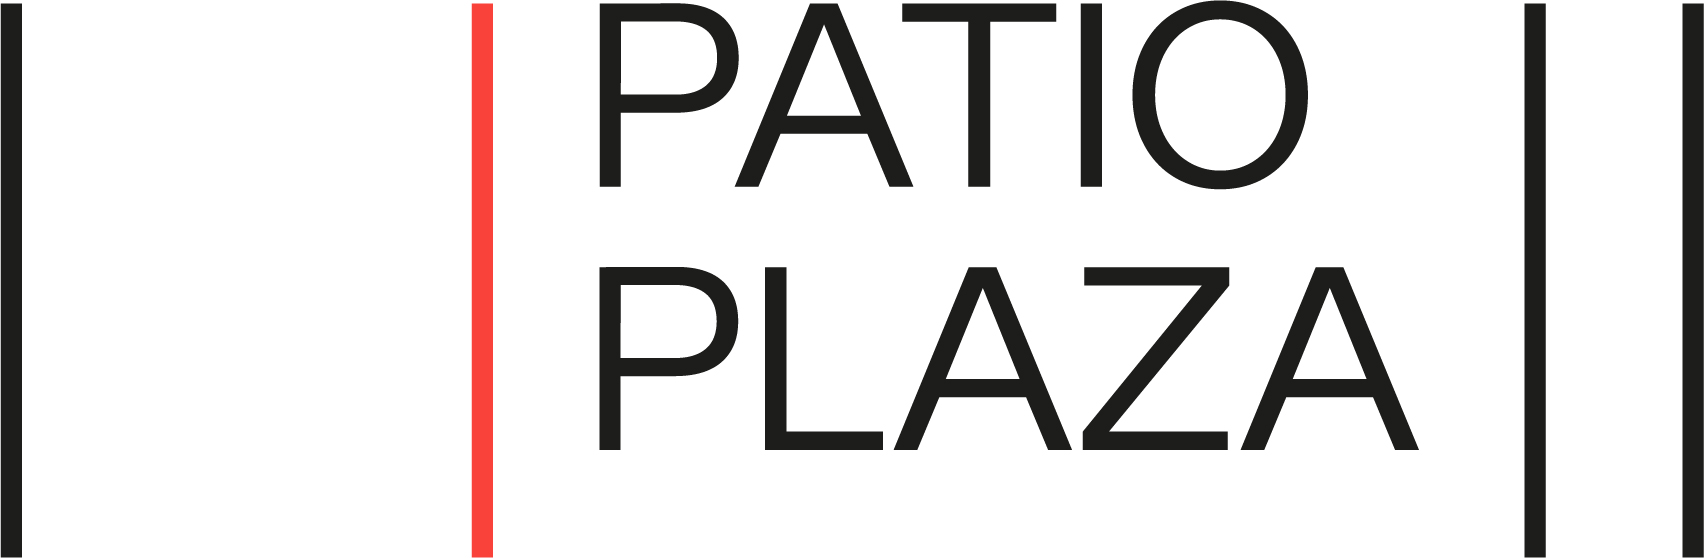 Patio Plaza